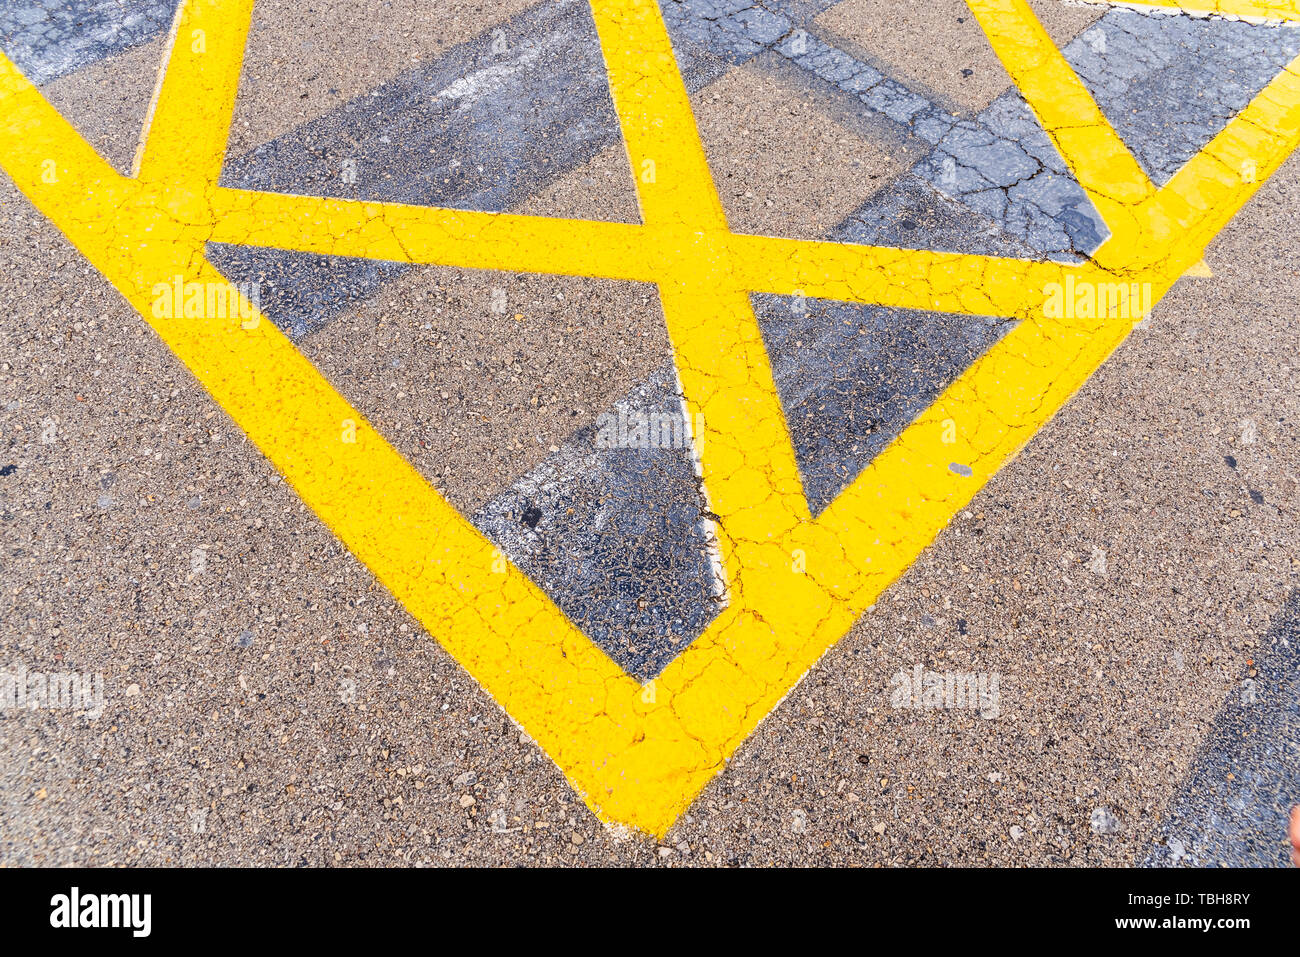 Luminose e di spessore delle linee di colore giallo sul pavimento di un parcheggio. Foto Stock